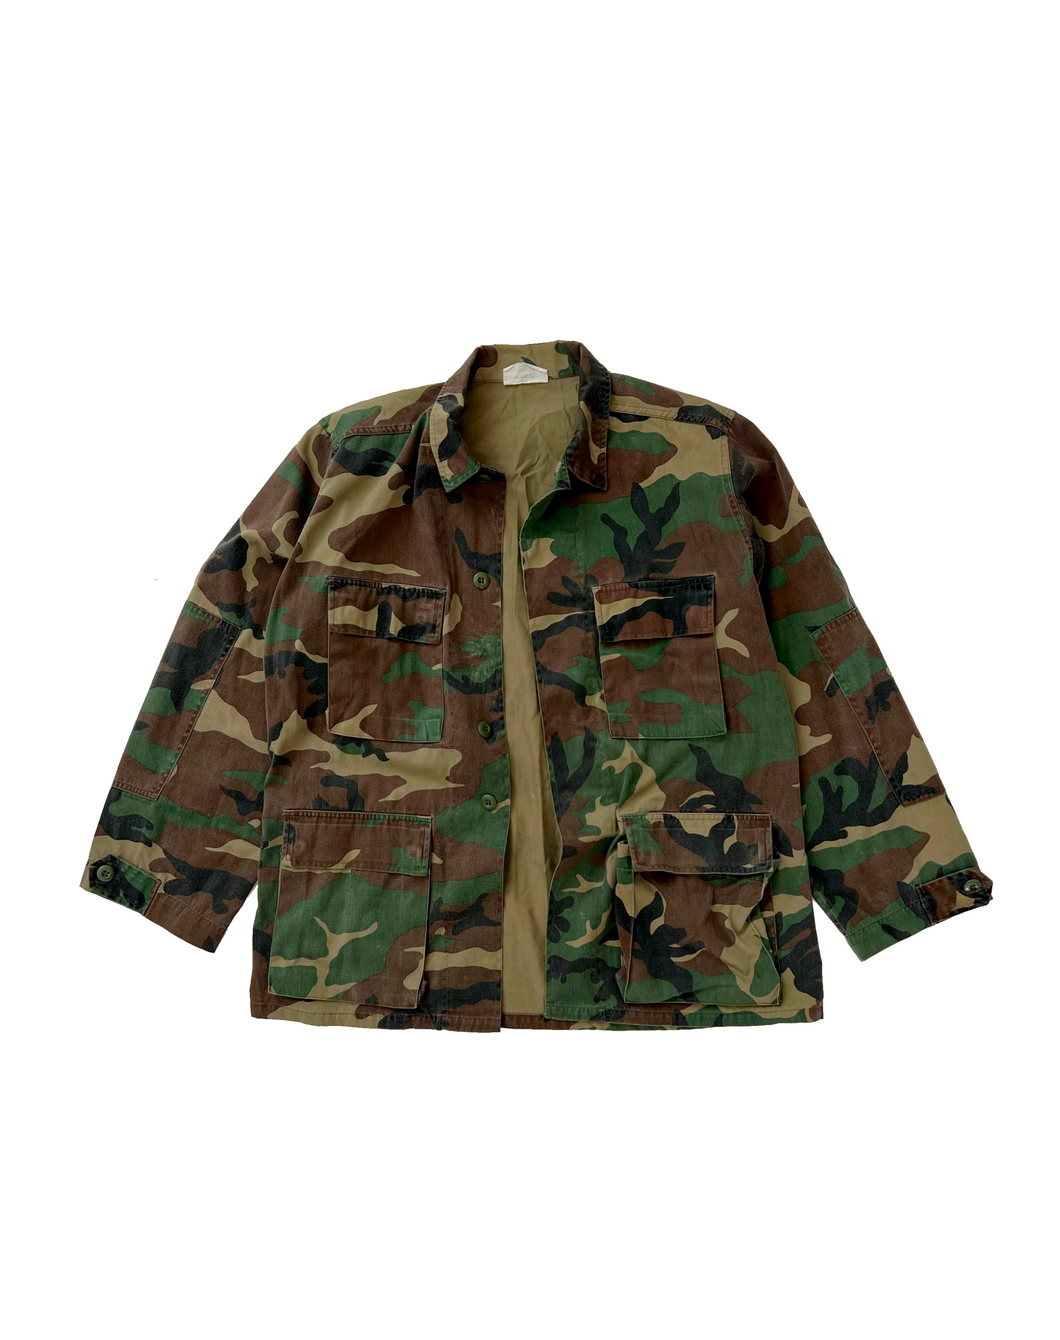 Vintage Camo Army Field Jacket